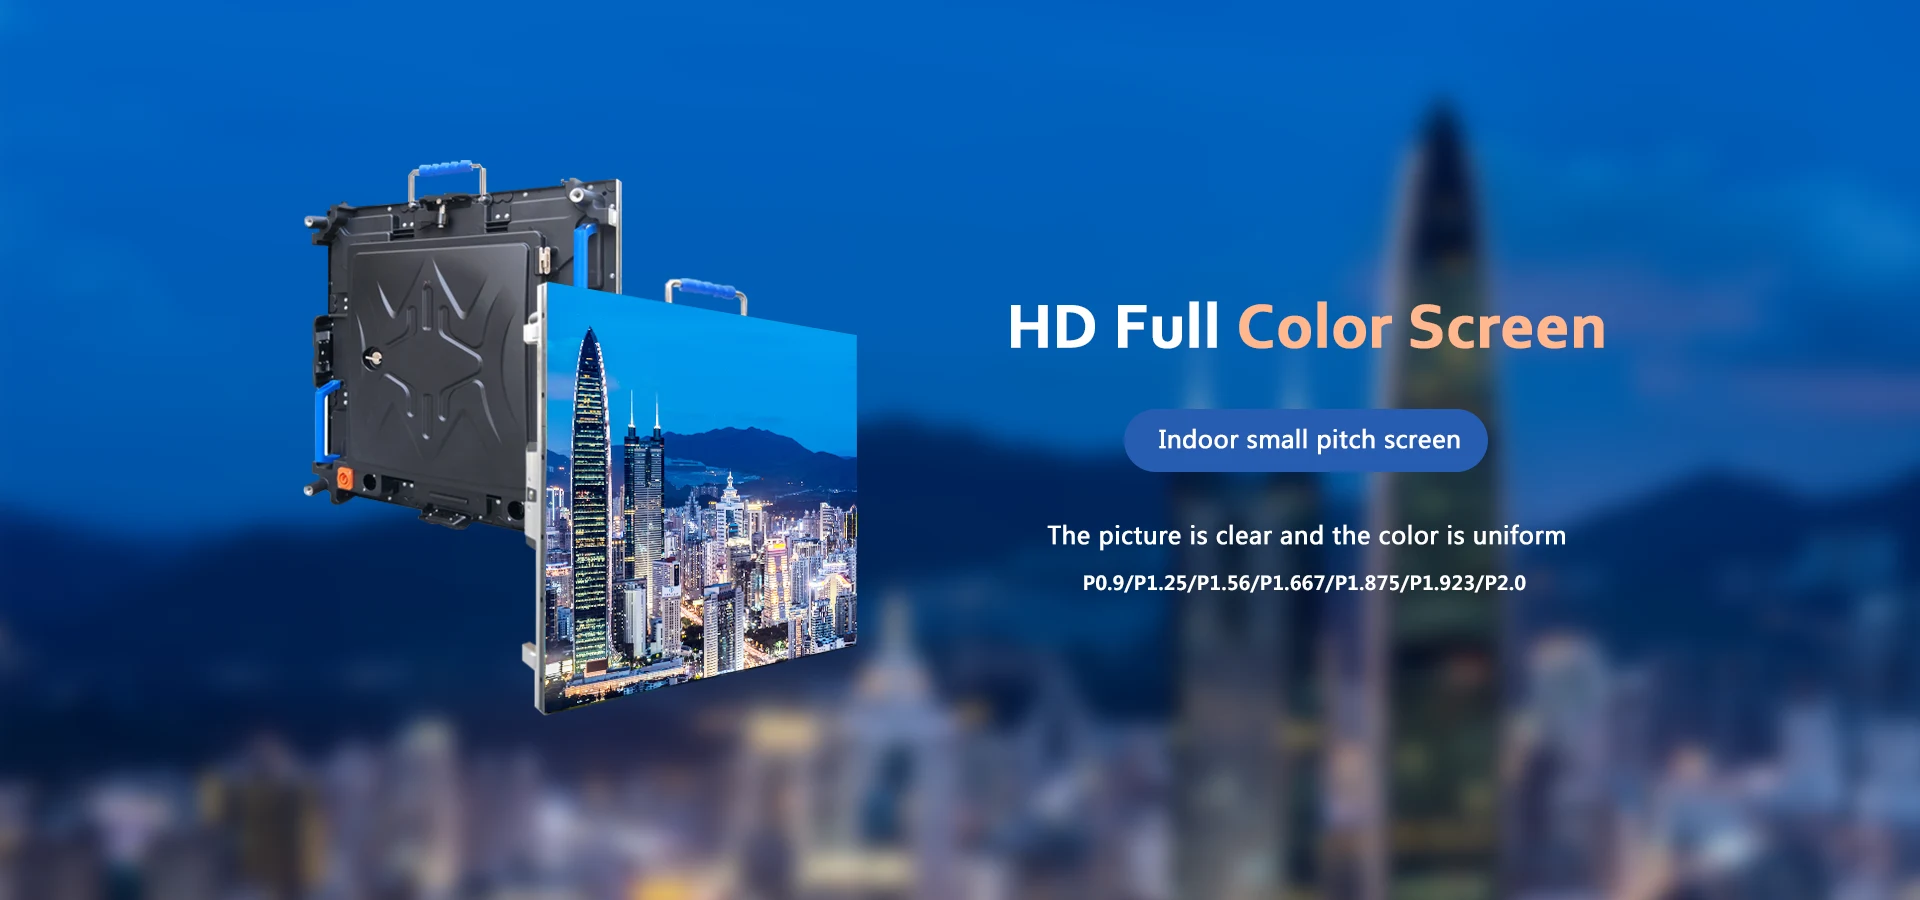 Fabricantes de telas led coloridas Smd para ambientes internos da China